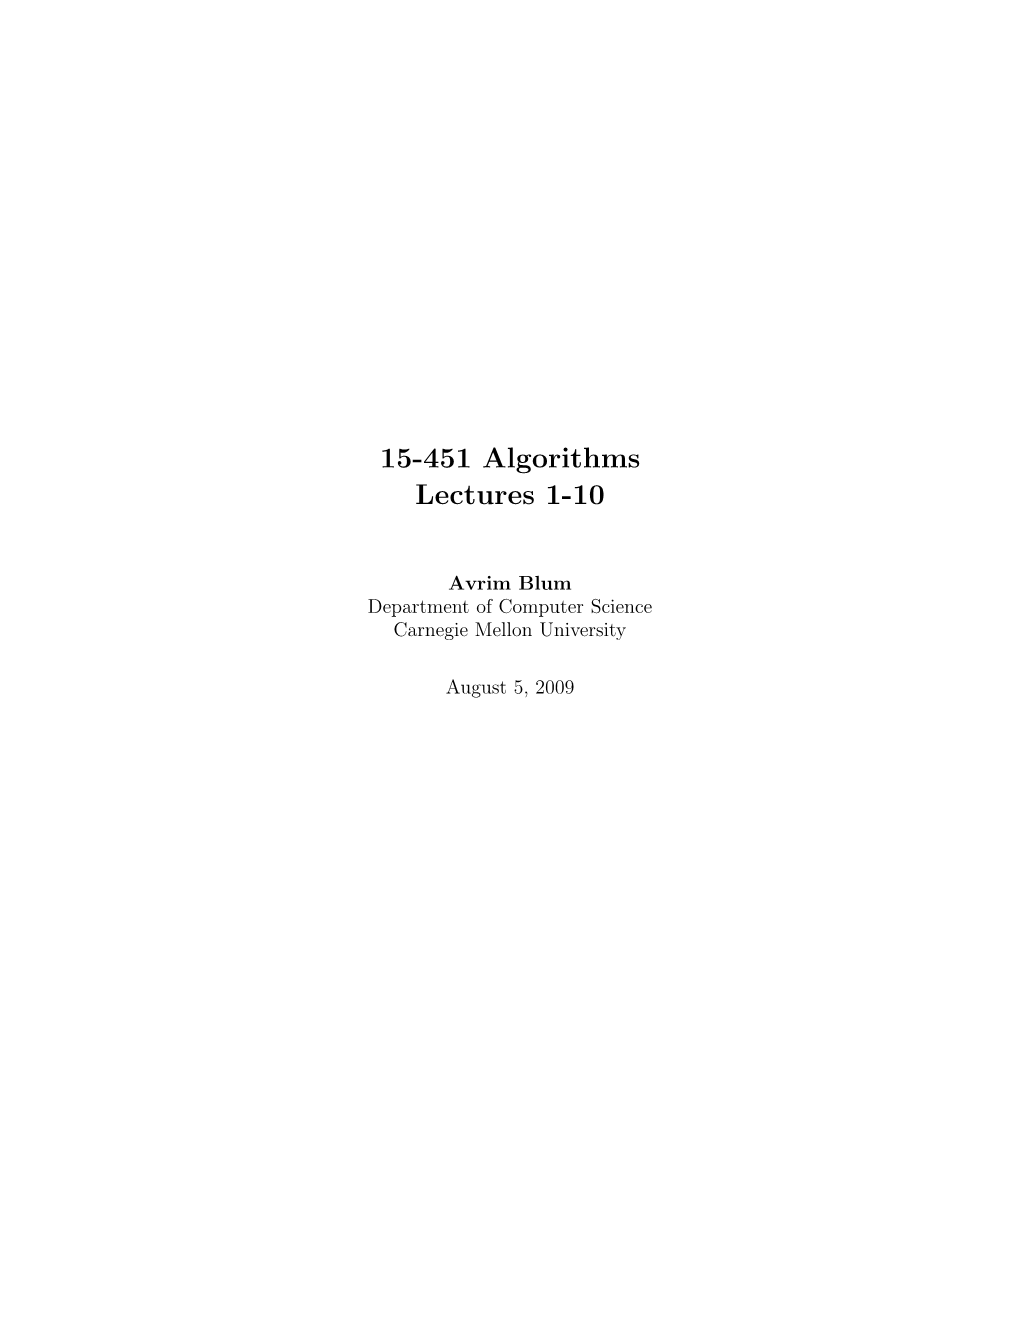 15-451 Algorithms Lectures 1-10